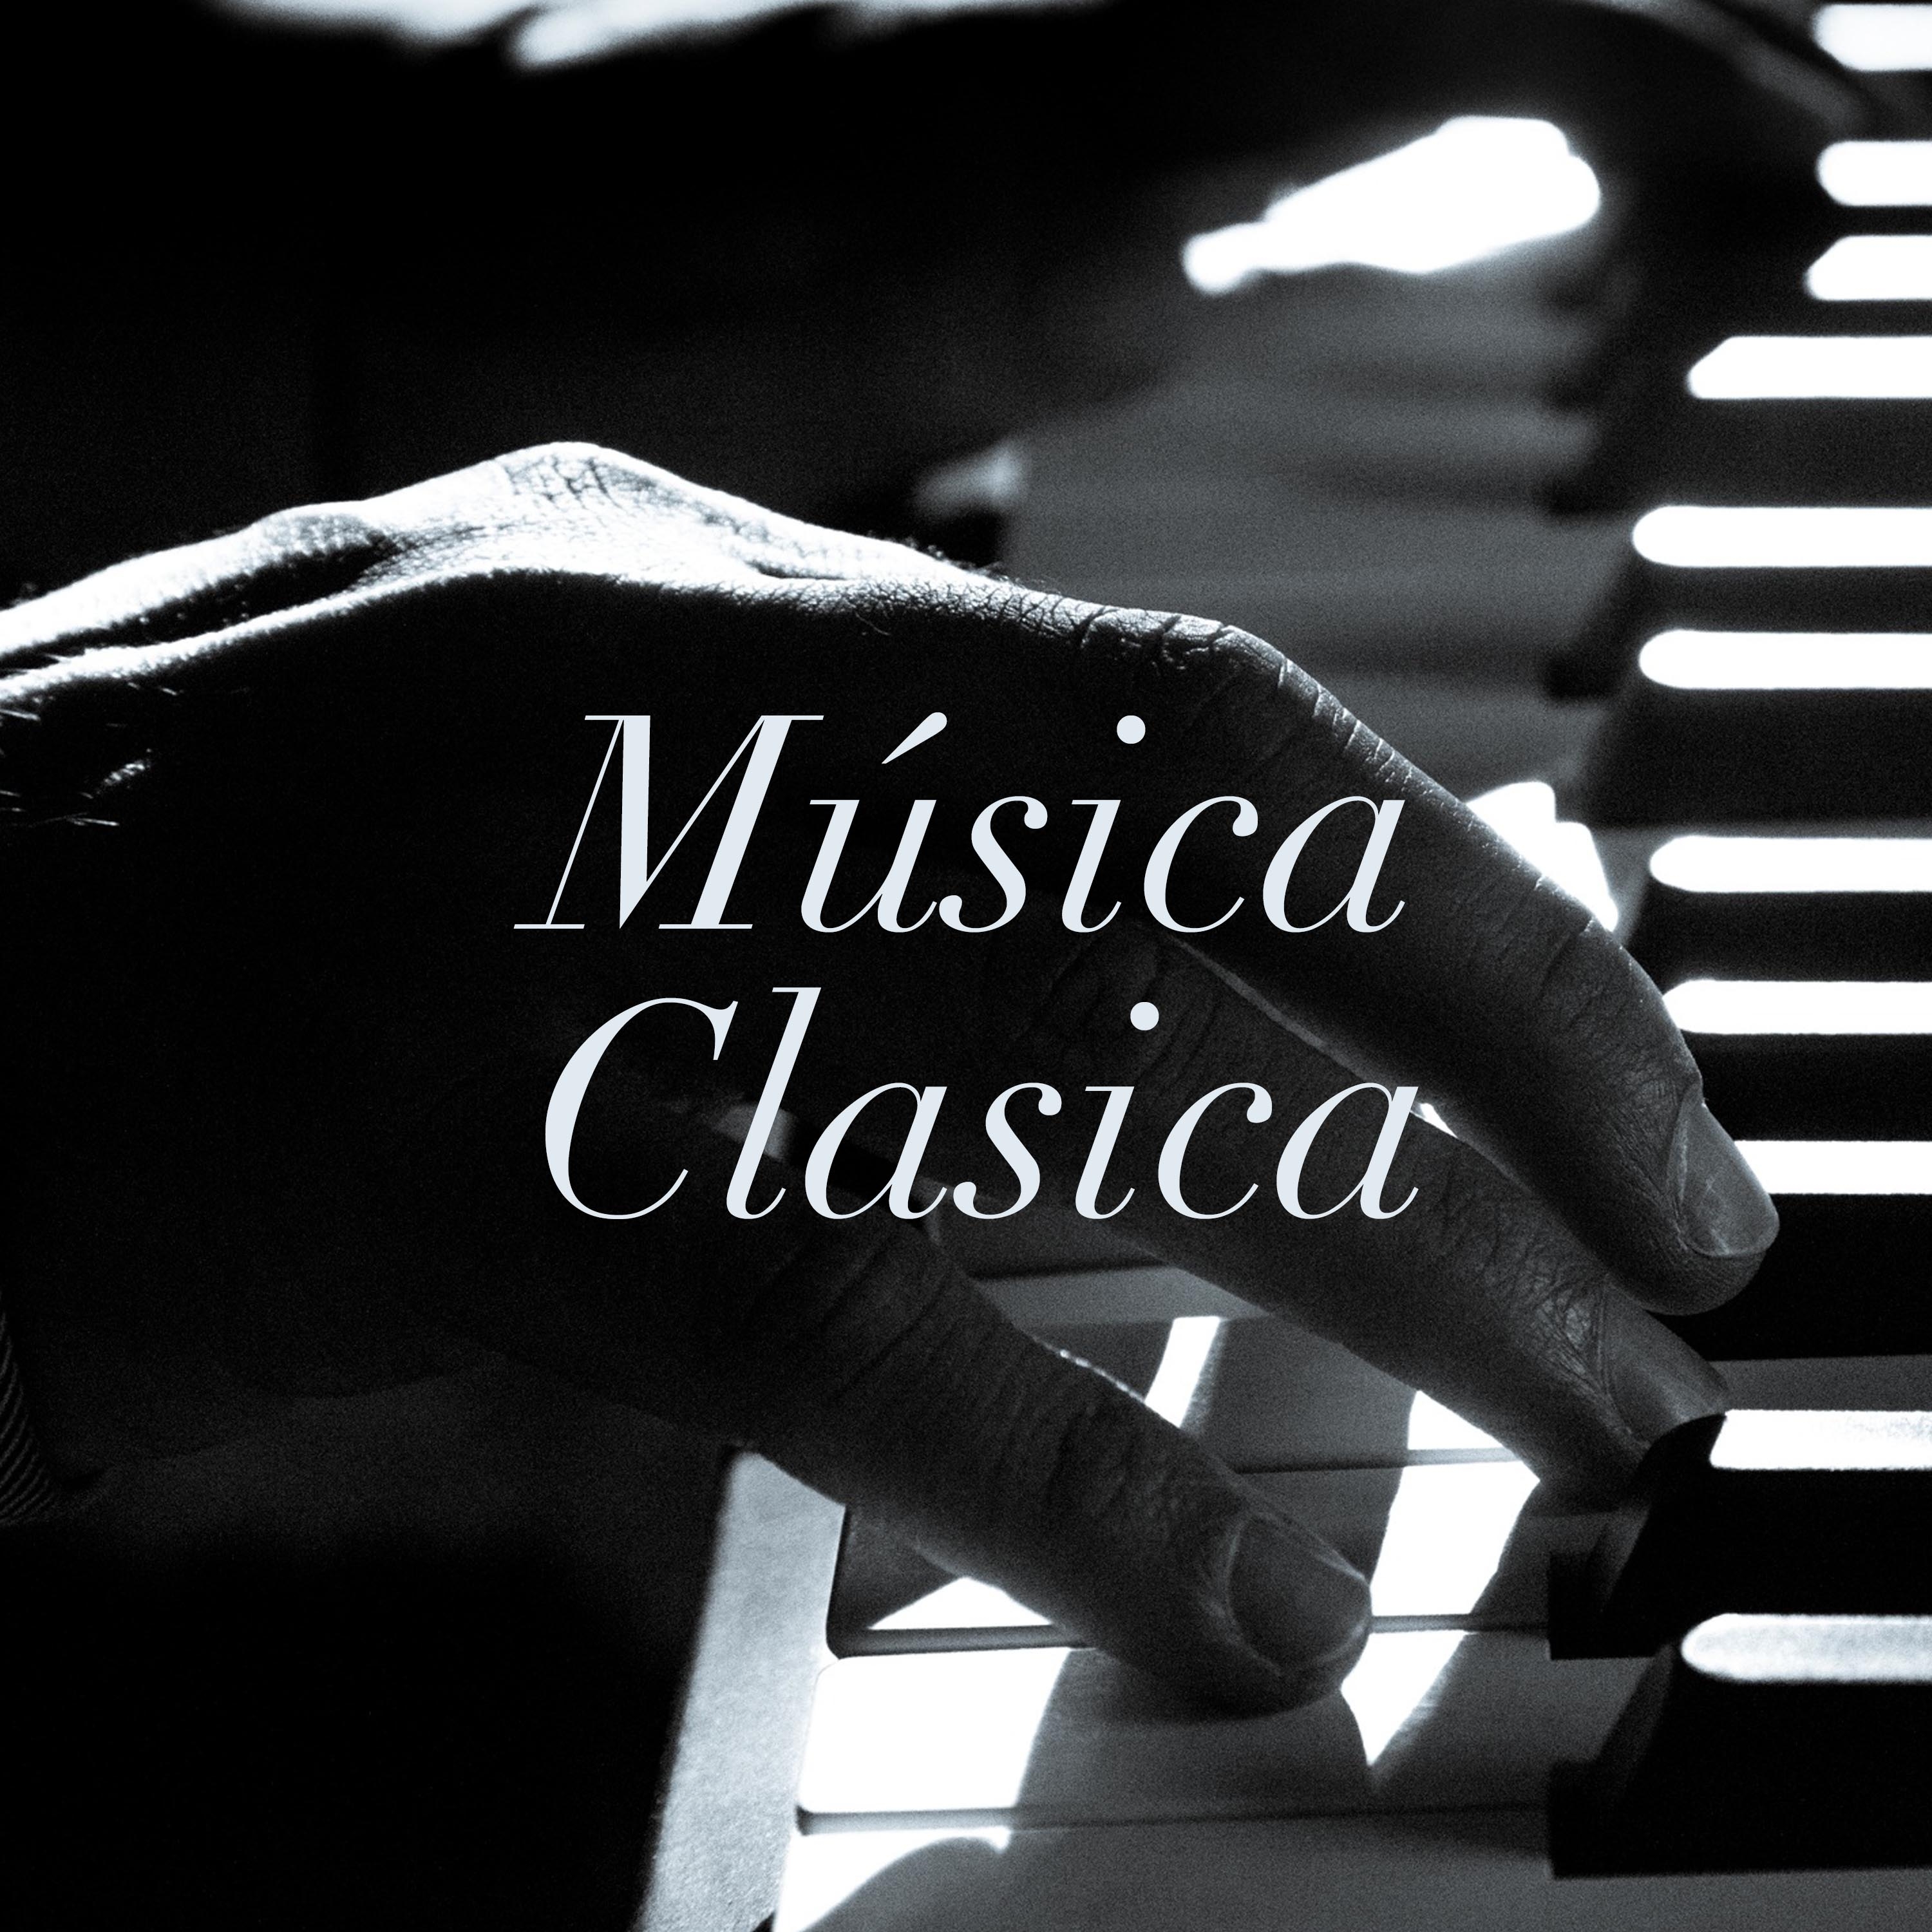 Música Clasica: Música Instrumental de Piano para Relajación Profunda